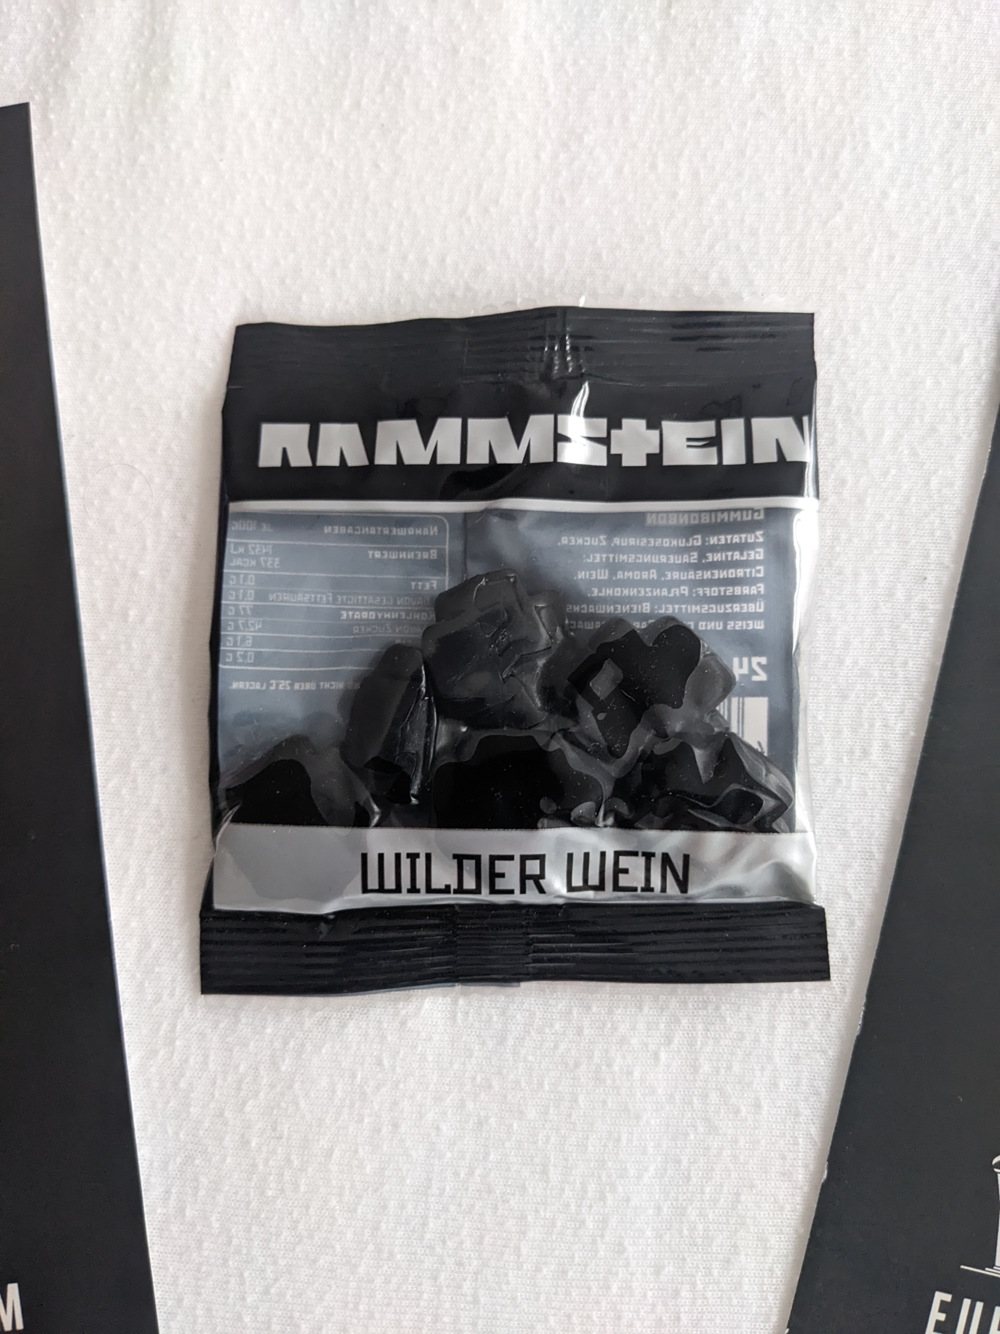 Weingummi wilder Wein Rammstein + Zubehör Gelsenkirchen